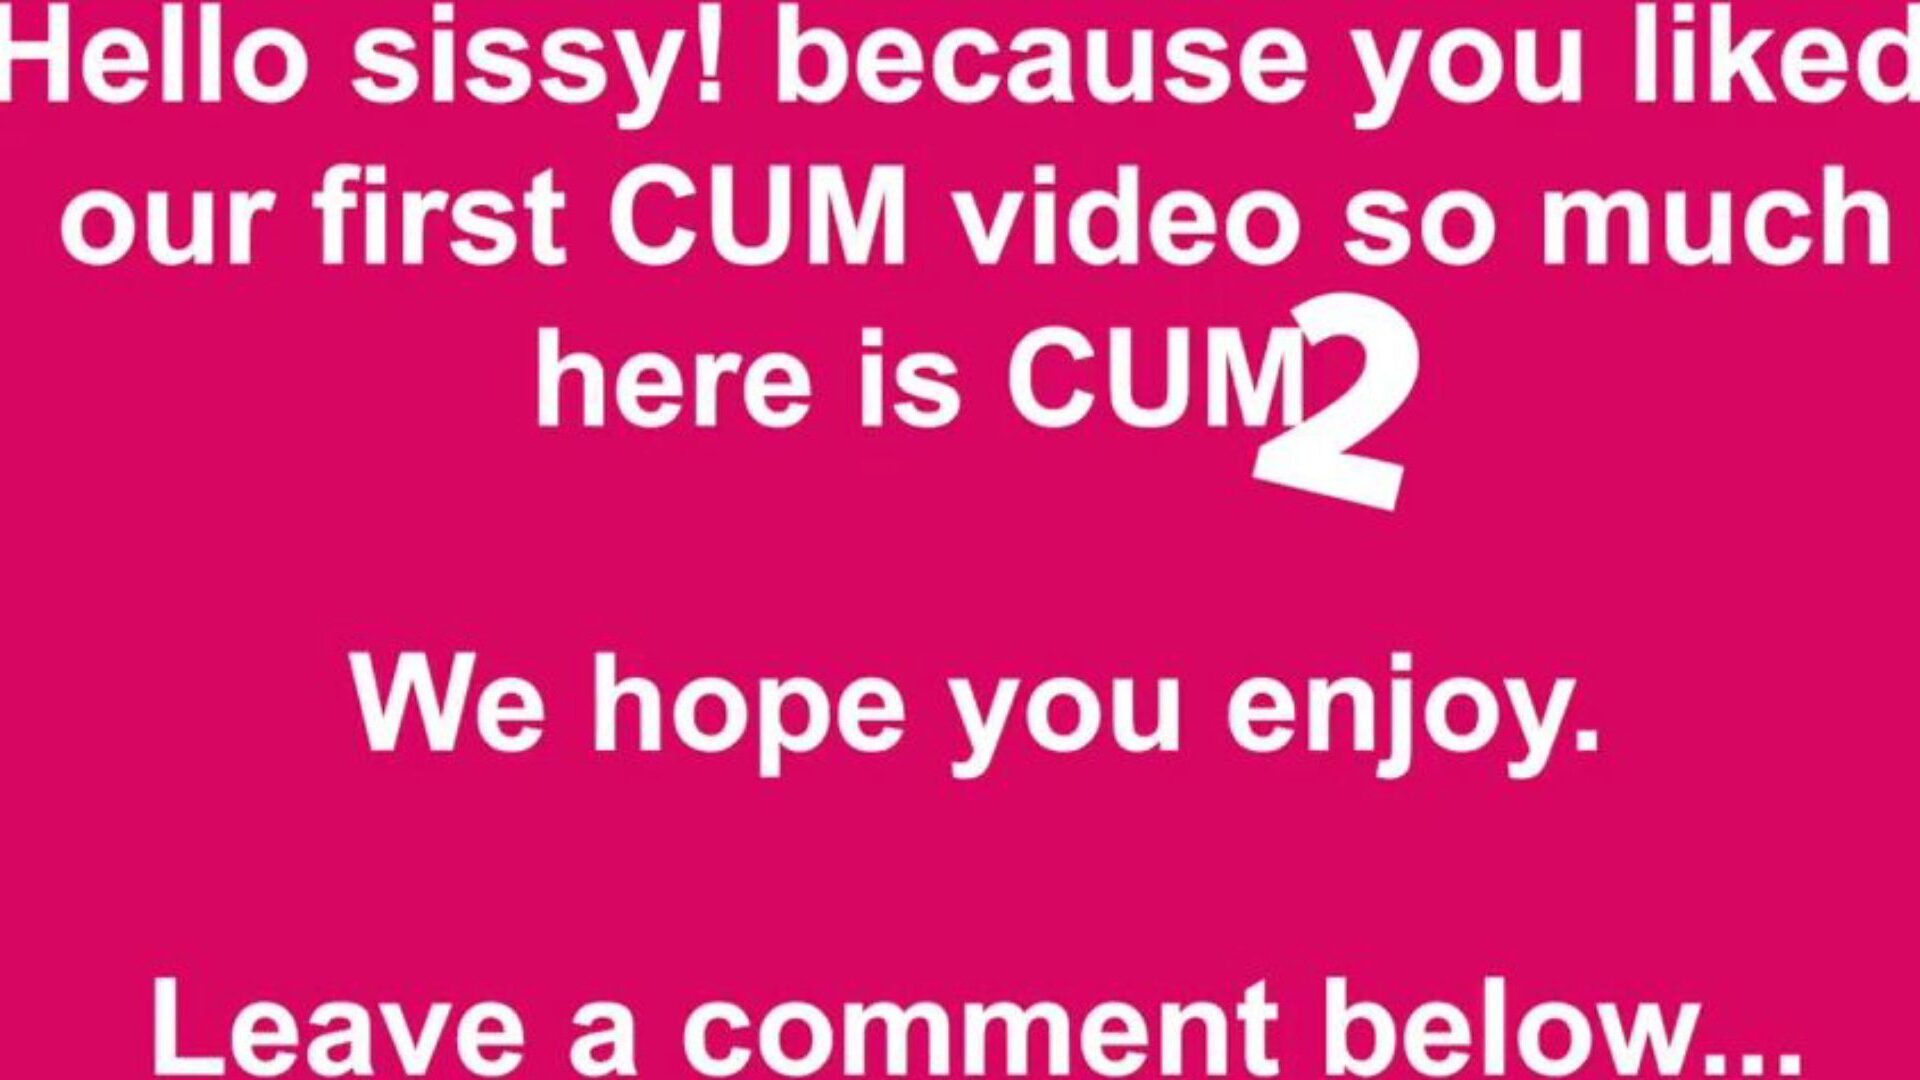 cum two free cum & cumming tube porn video 49 - xhamster bekijk cum two tube fuck-a-thon video gratis op xhamster, met de heerszuchtige verzameling gratis cum cumming tube & tube 2 hd pornofilmafleveringen